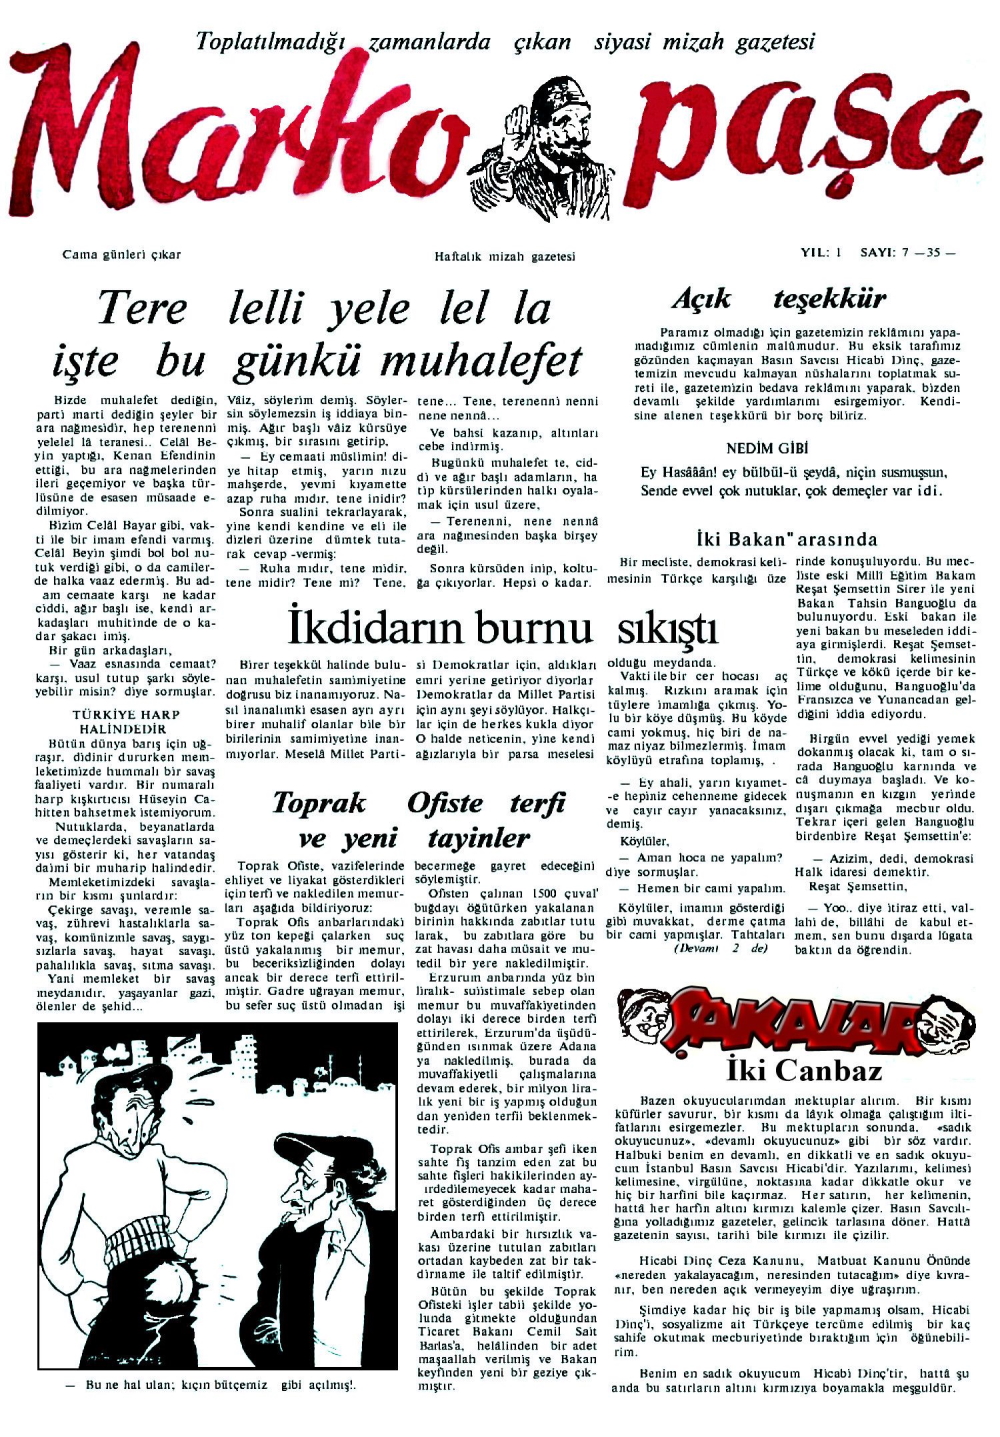 türkiye, karikatür, tarih, dergi, marko paşa